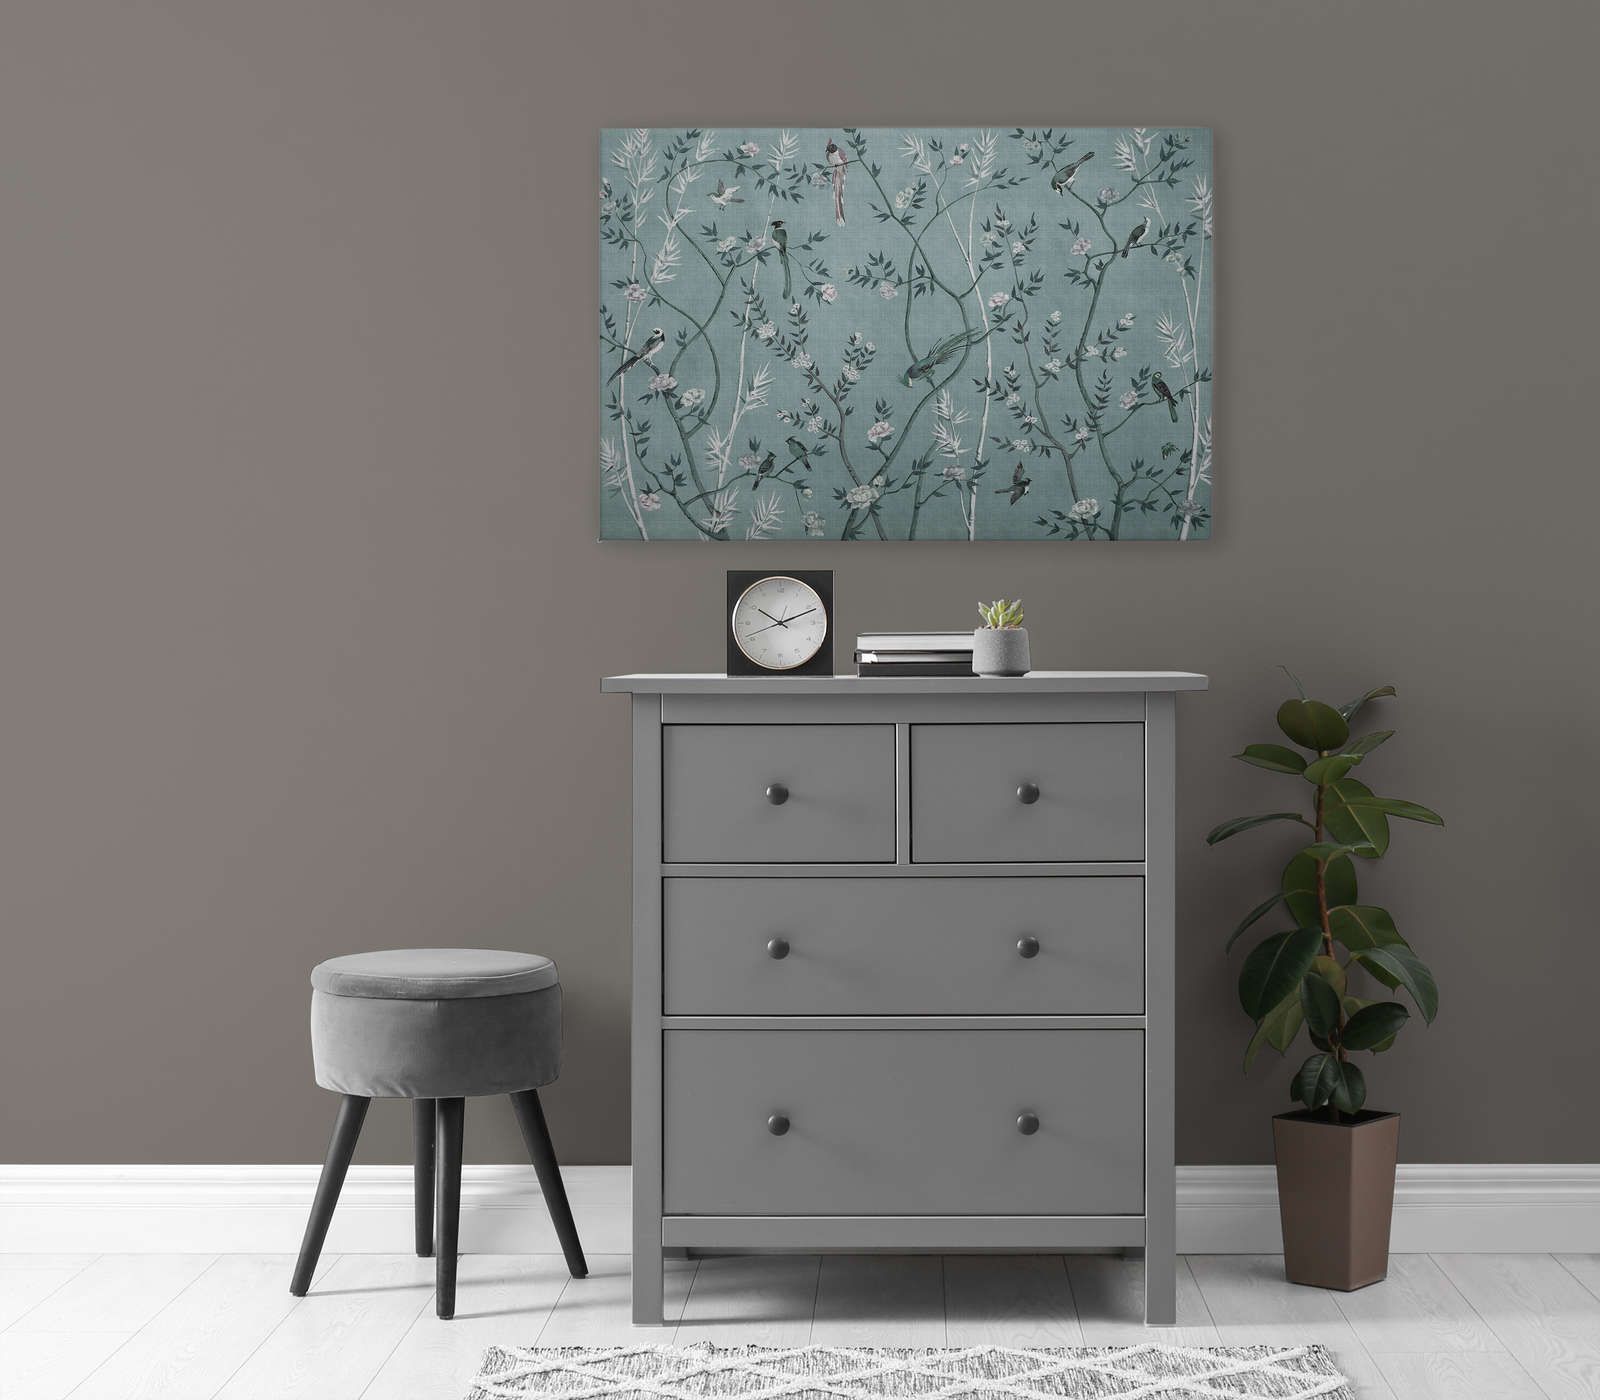             Tea Room 1 - Quadro su tela Birds & Flowers Design in Petrol & White - 0,90 m x 0,60 m
        